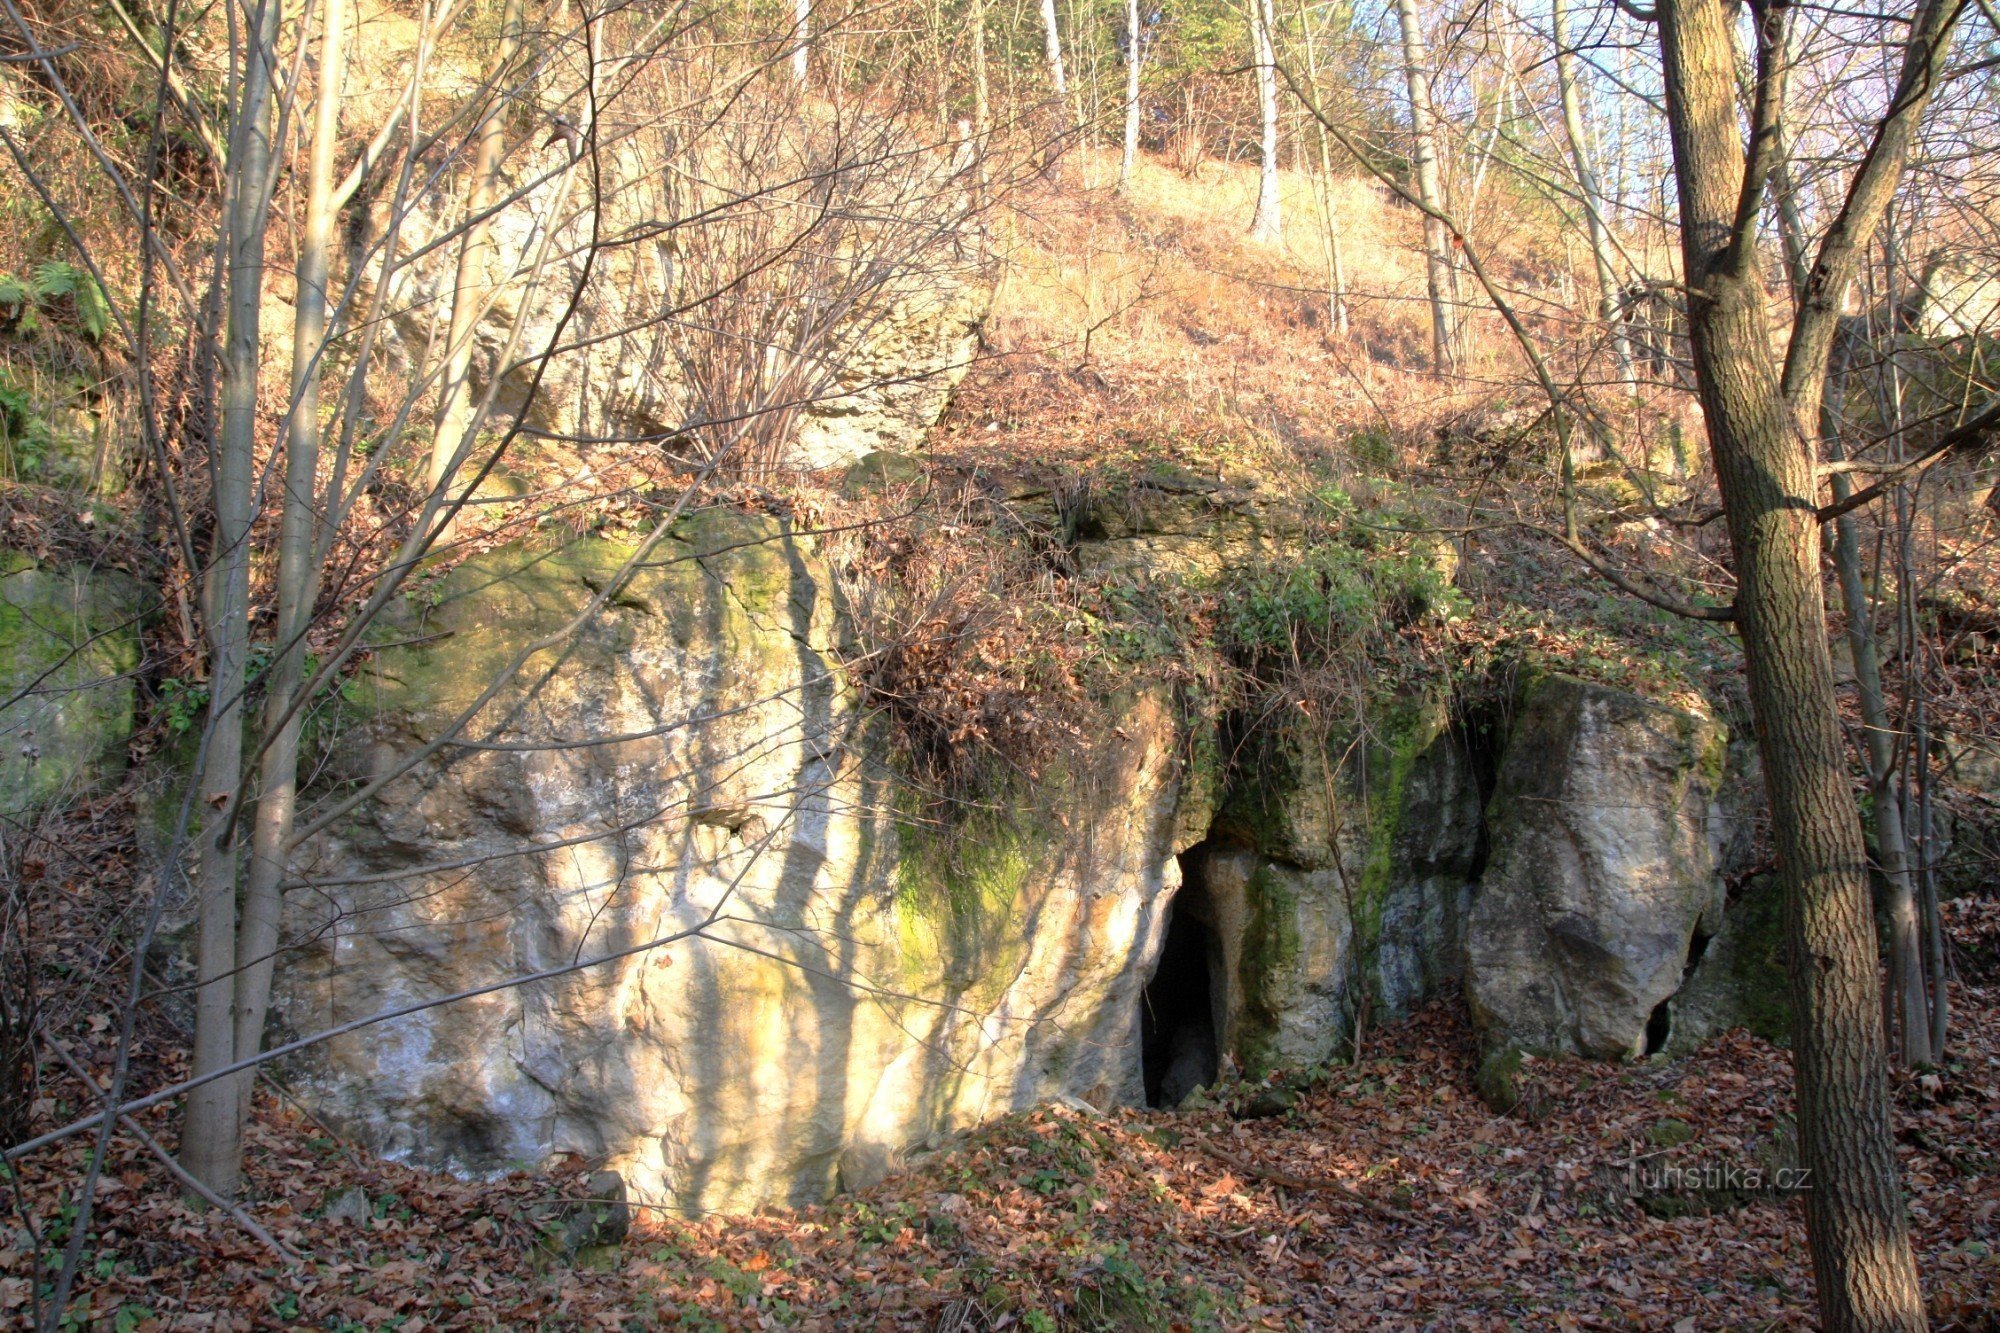 Diabelskie dziury w pobliżu miejscowości Běla nad Svitavou